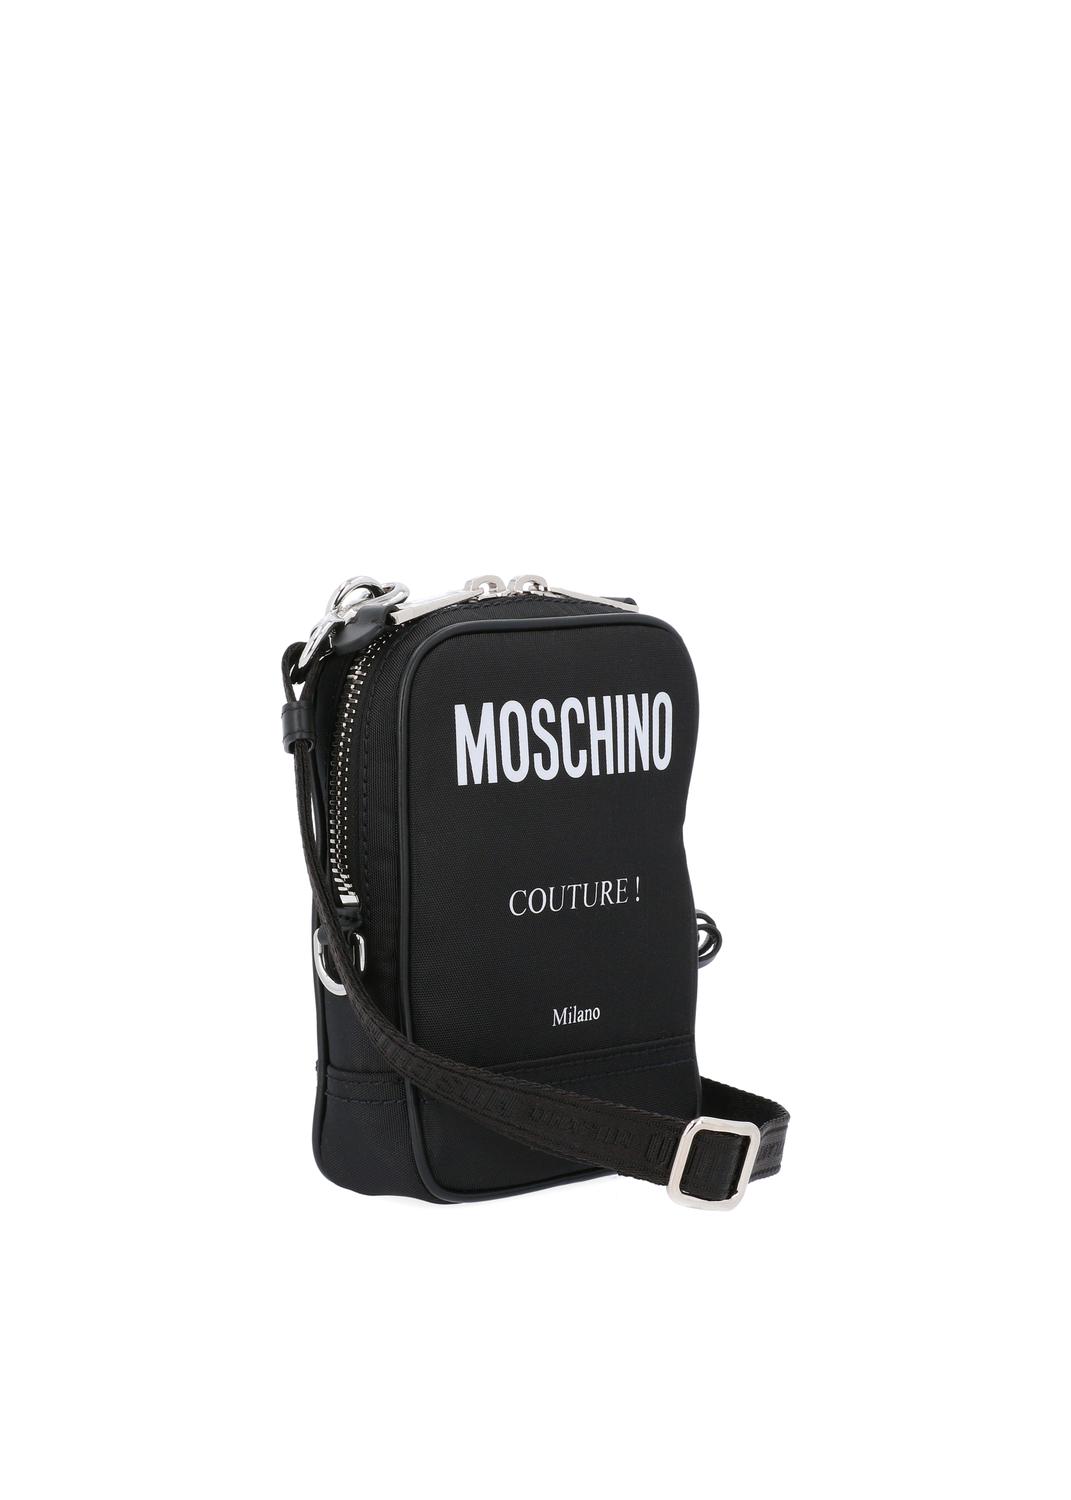 Moschino bolso de hombro Couture MSC-Z2A7425